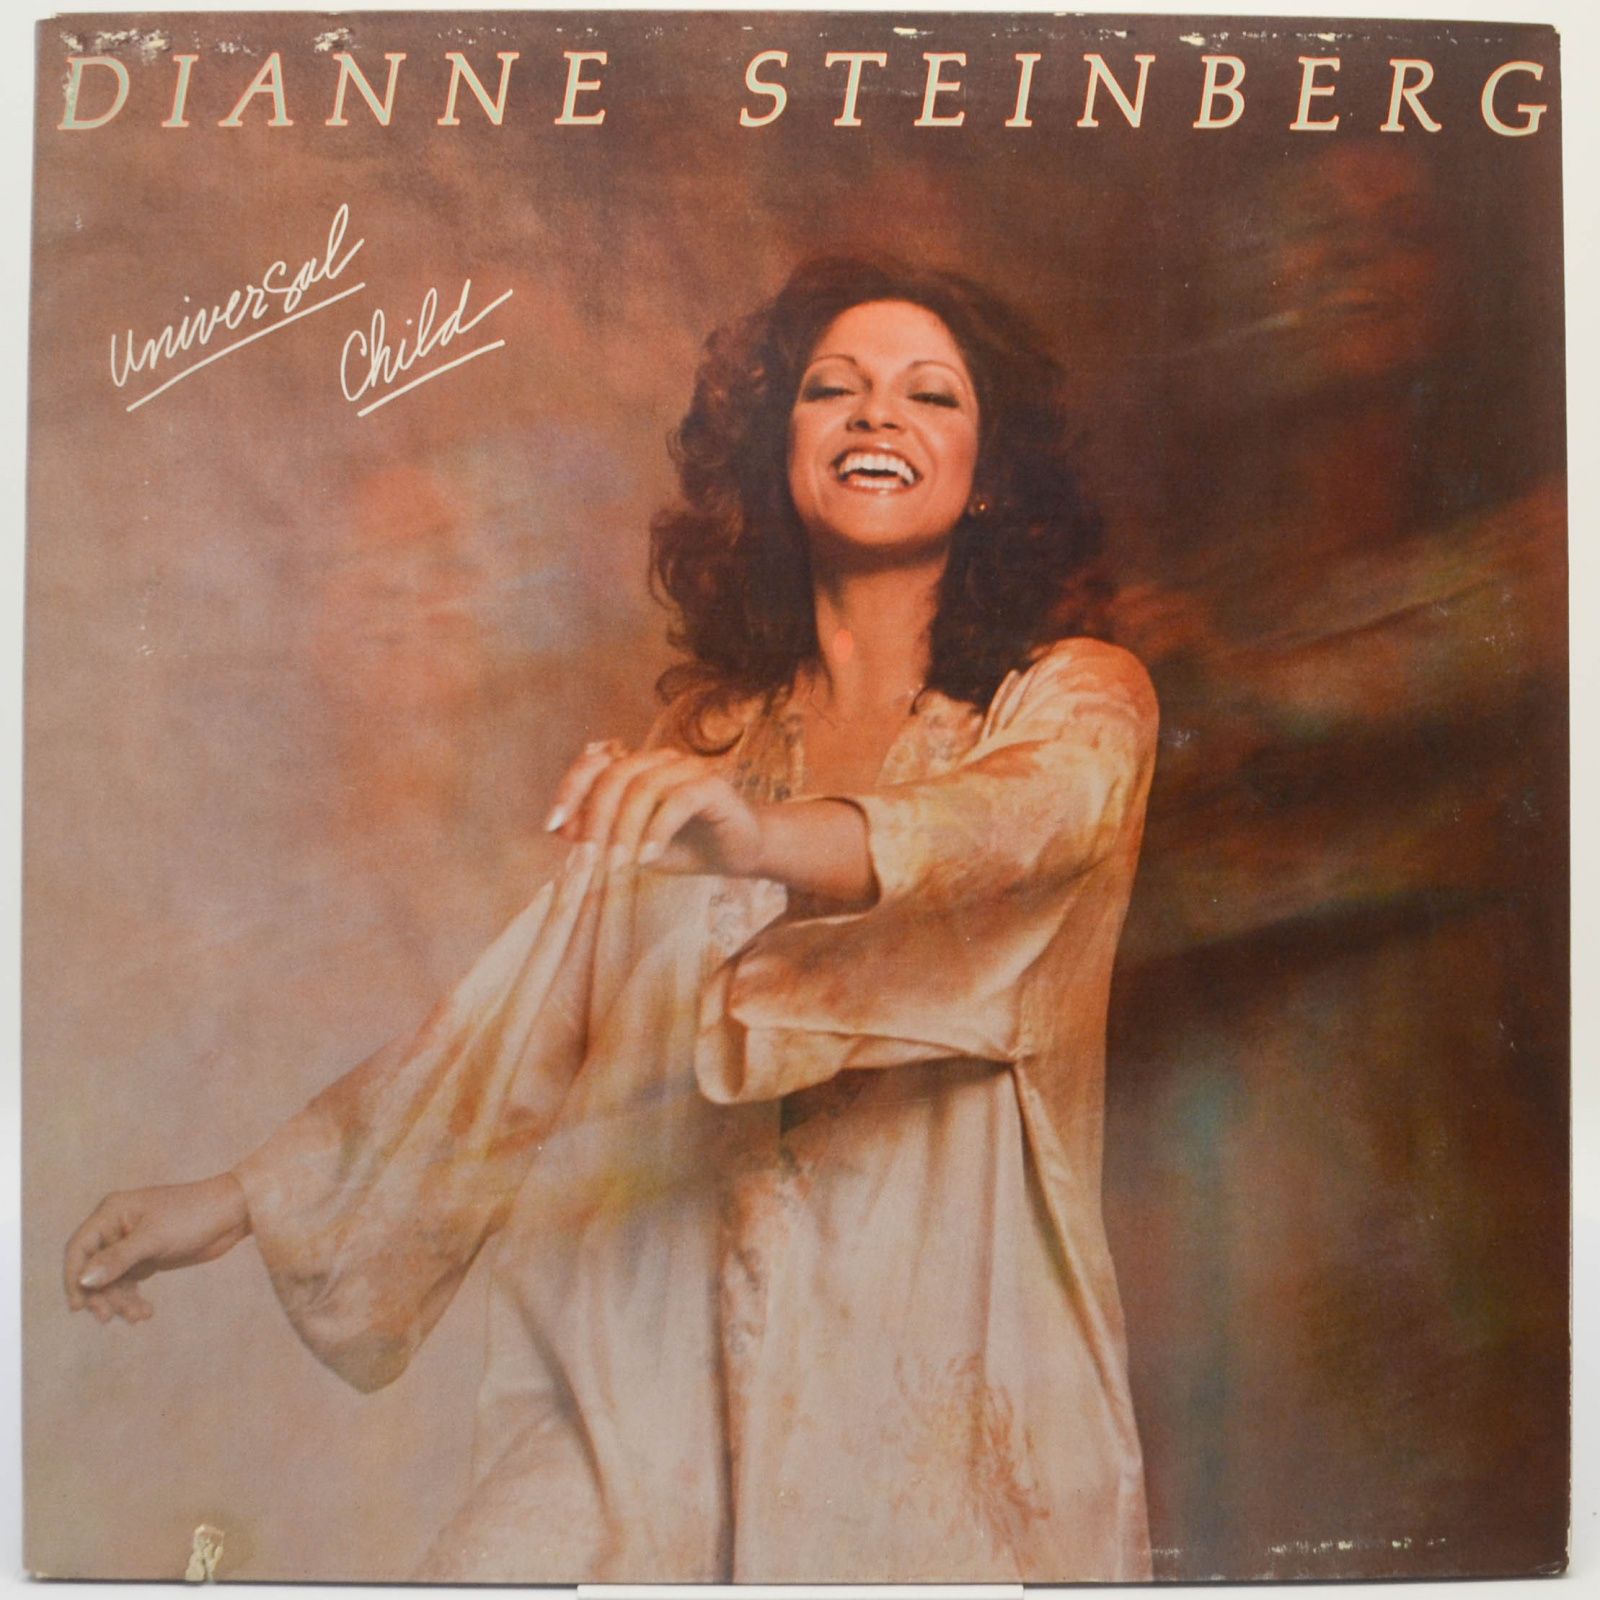 Dianne Steinberg — Universal Child, 1977